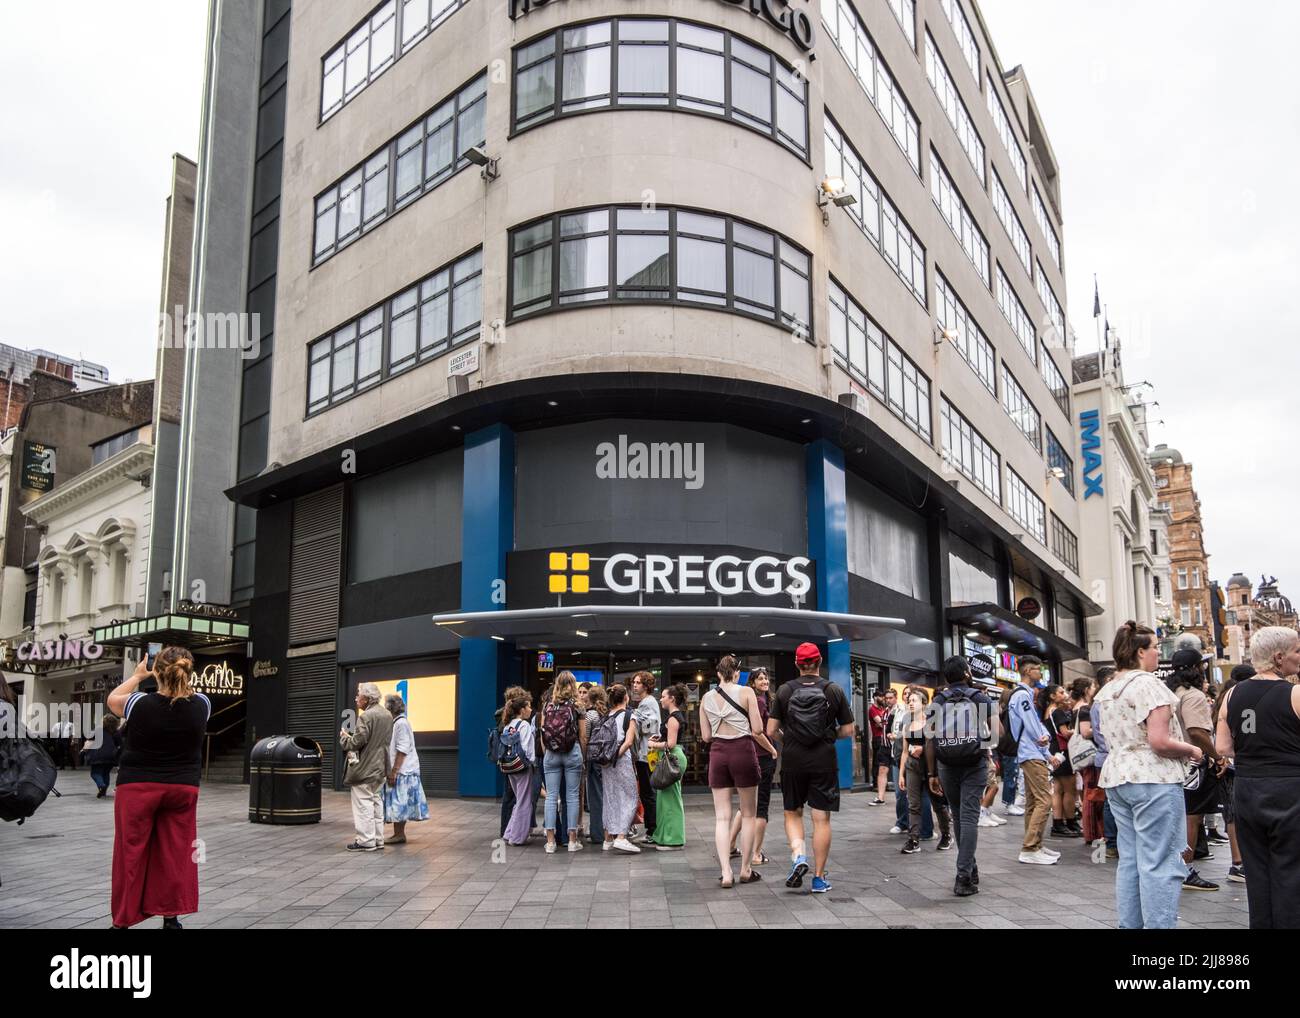 Greggs The Bakers ouvre un magasin à One Leicester Square, dans le centre de Londres, en Angleterre, au Royaume-Uni. Banque D'Images